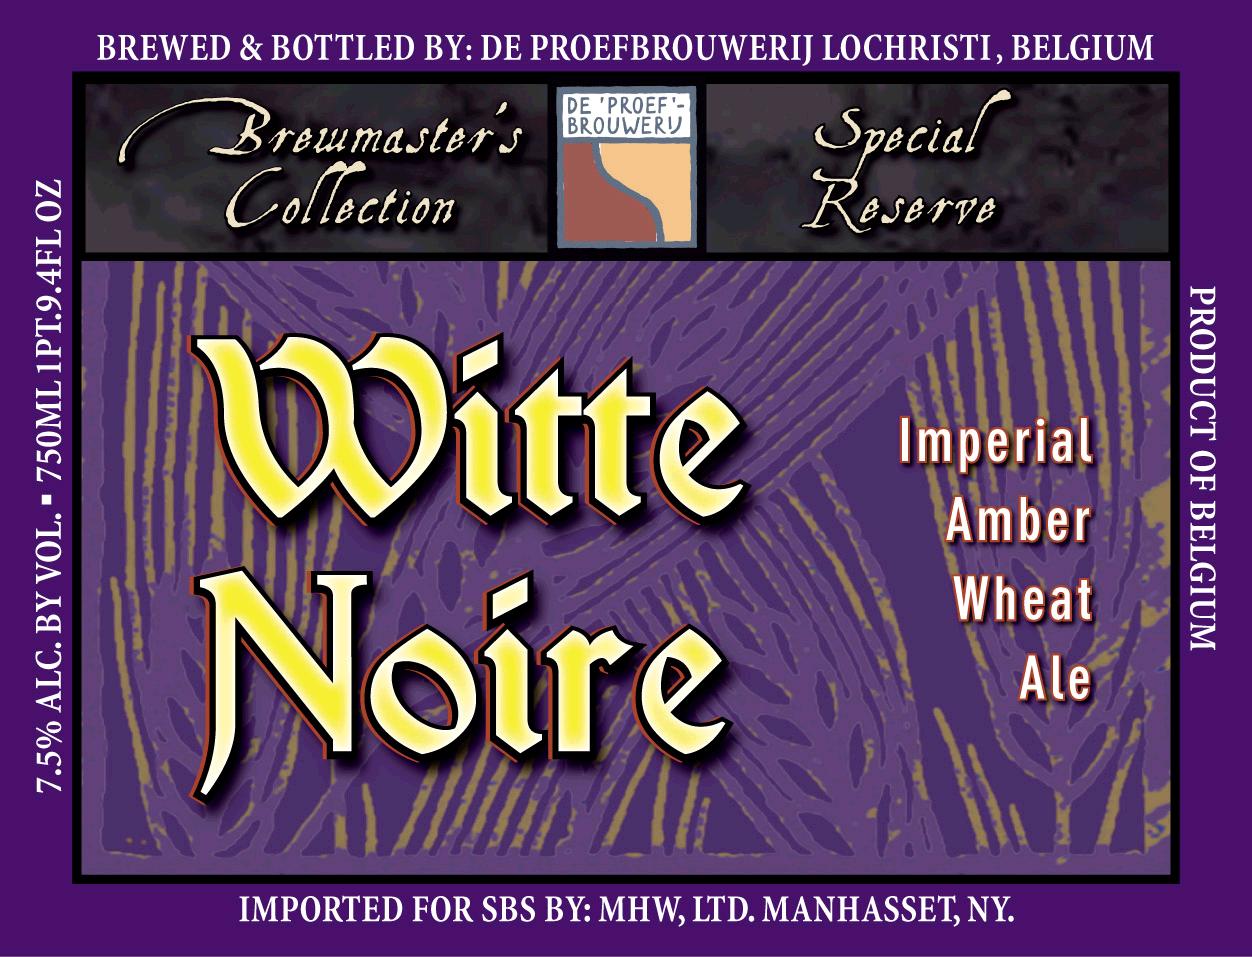 De Proefbrouwerij Witte Noire